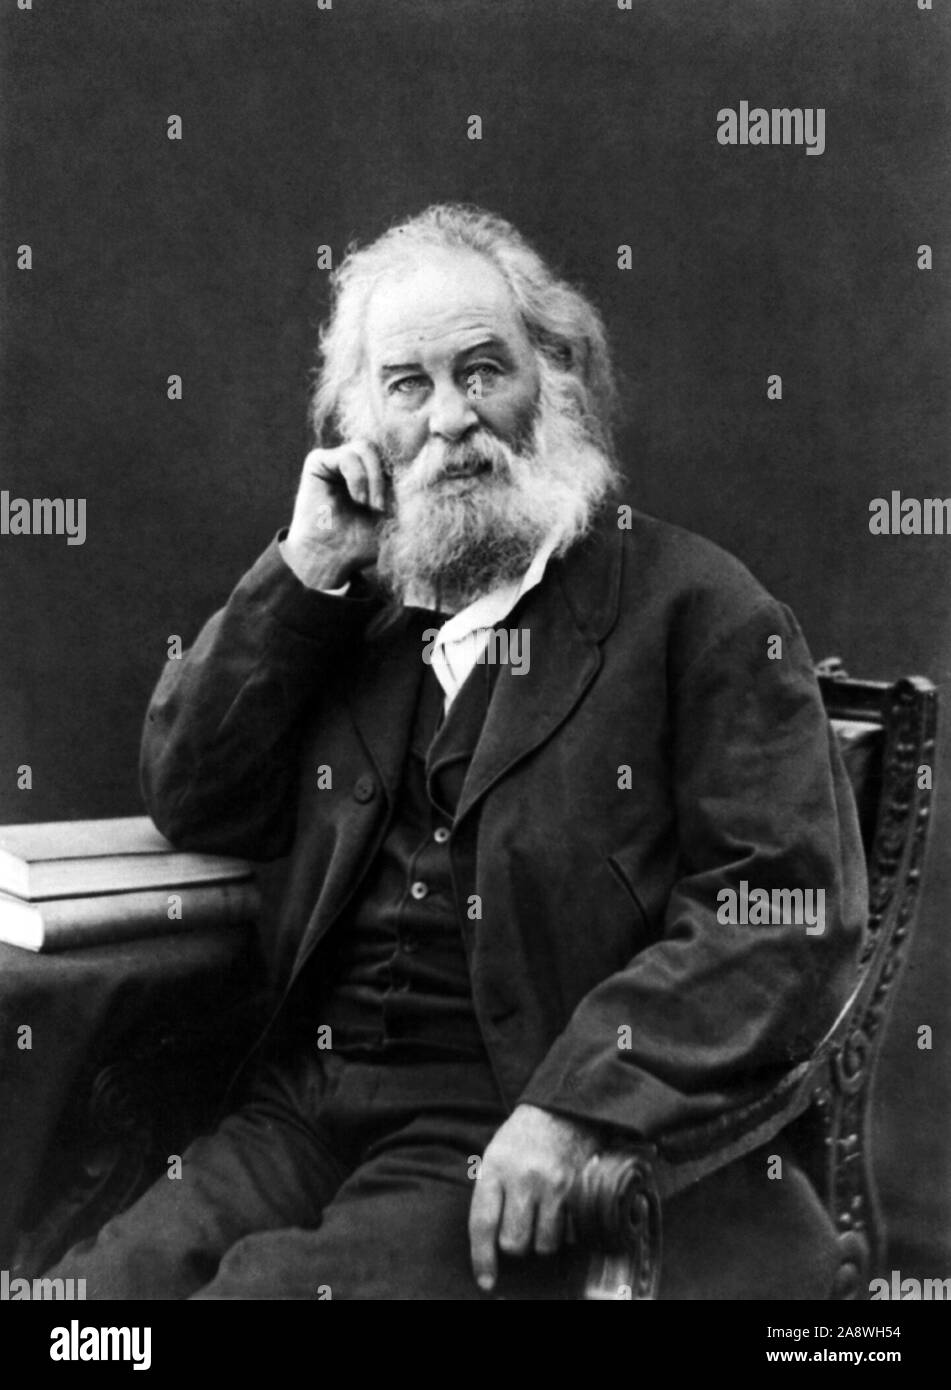 Vintage foto ritratto del poeta americano, saggista e giornalista Walt Whitman (1819 - 1892). Foto di circa 1880. Foto Stock